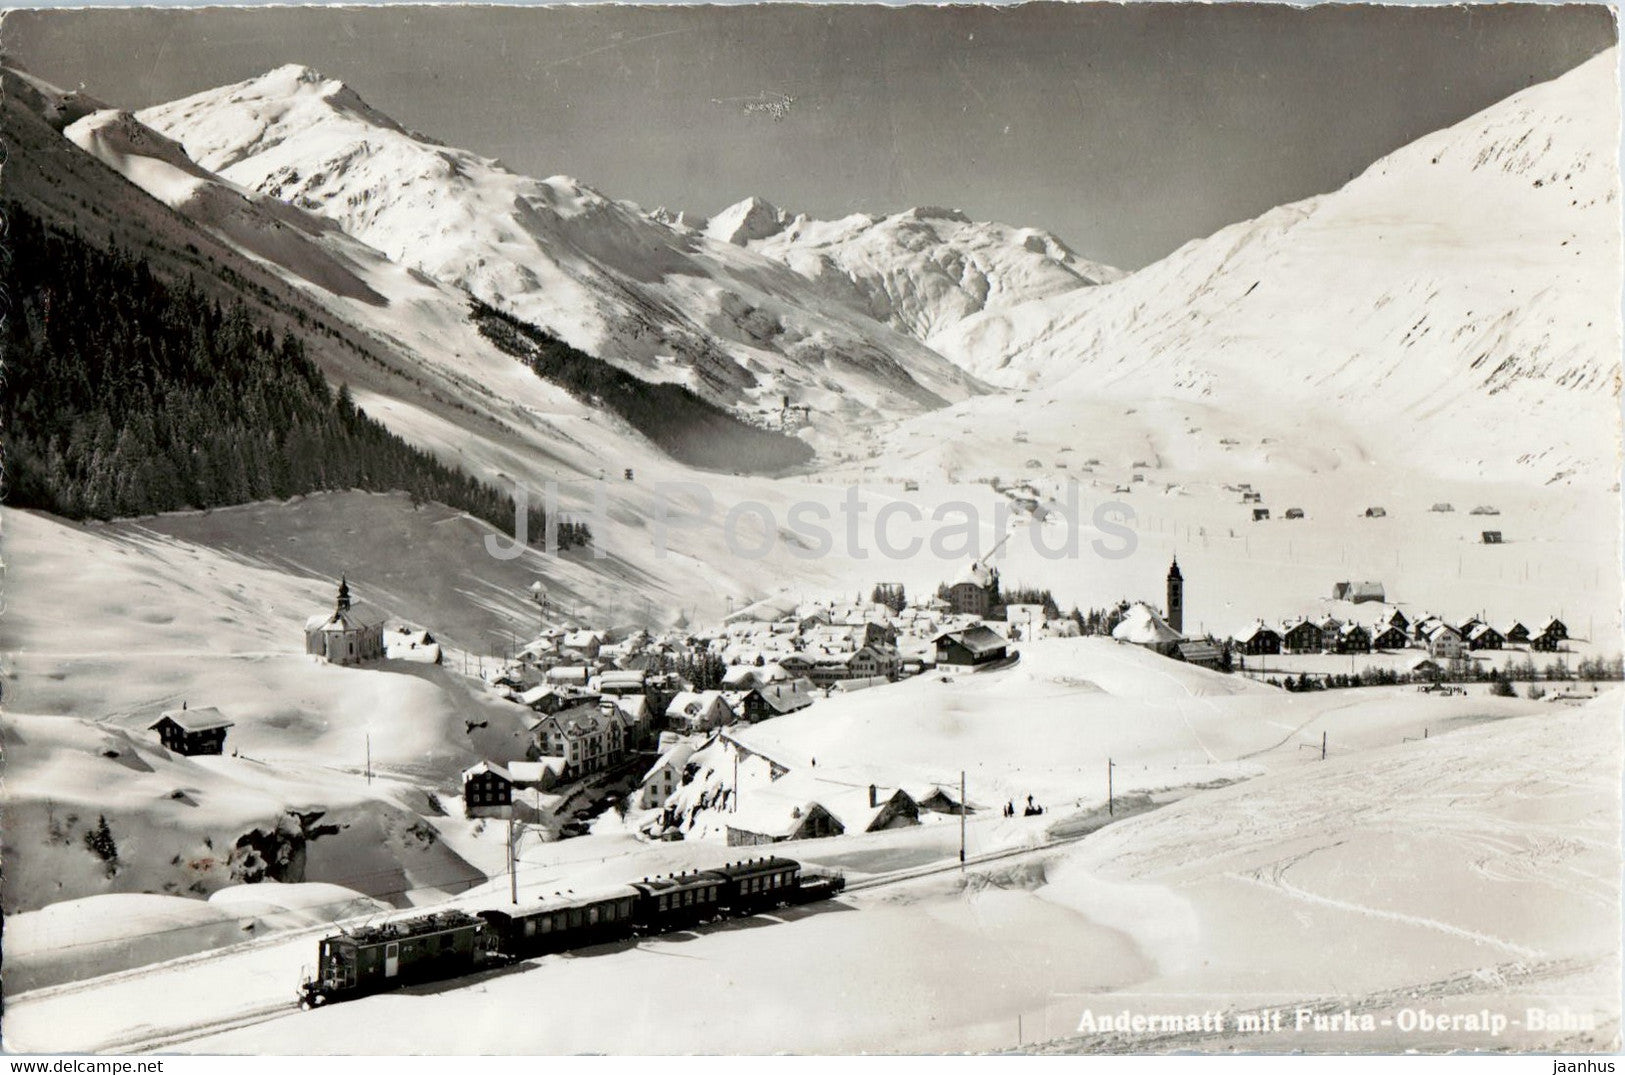 Andermatt mit Furka Oberalp Bahn - railway - train - 5013 - old postcard - Switzerland - used - JH Postcards